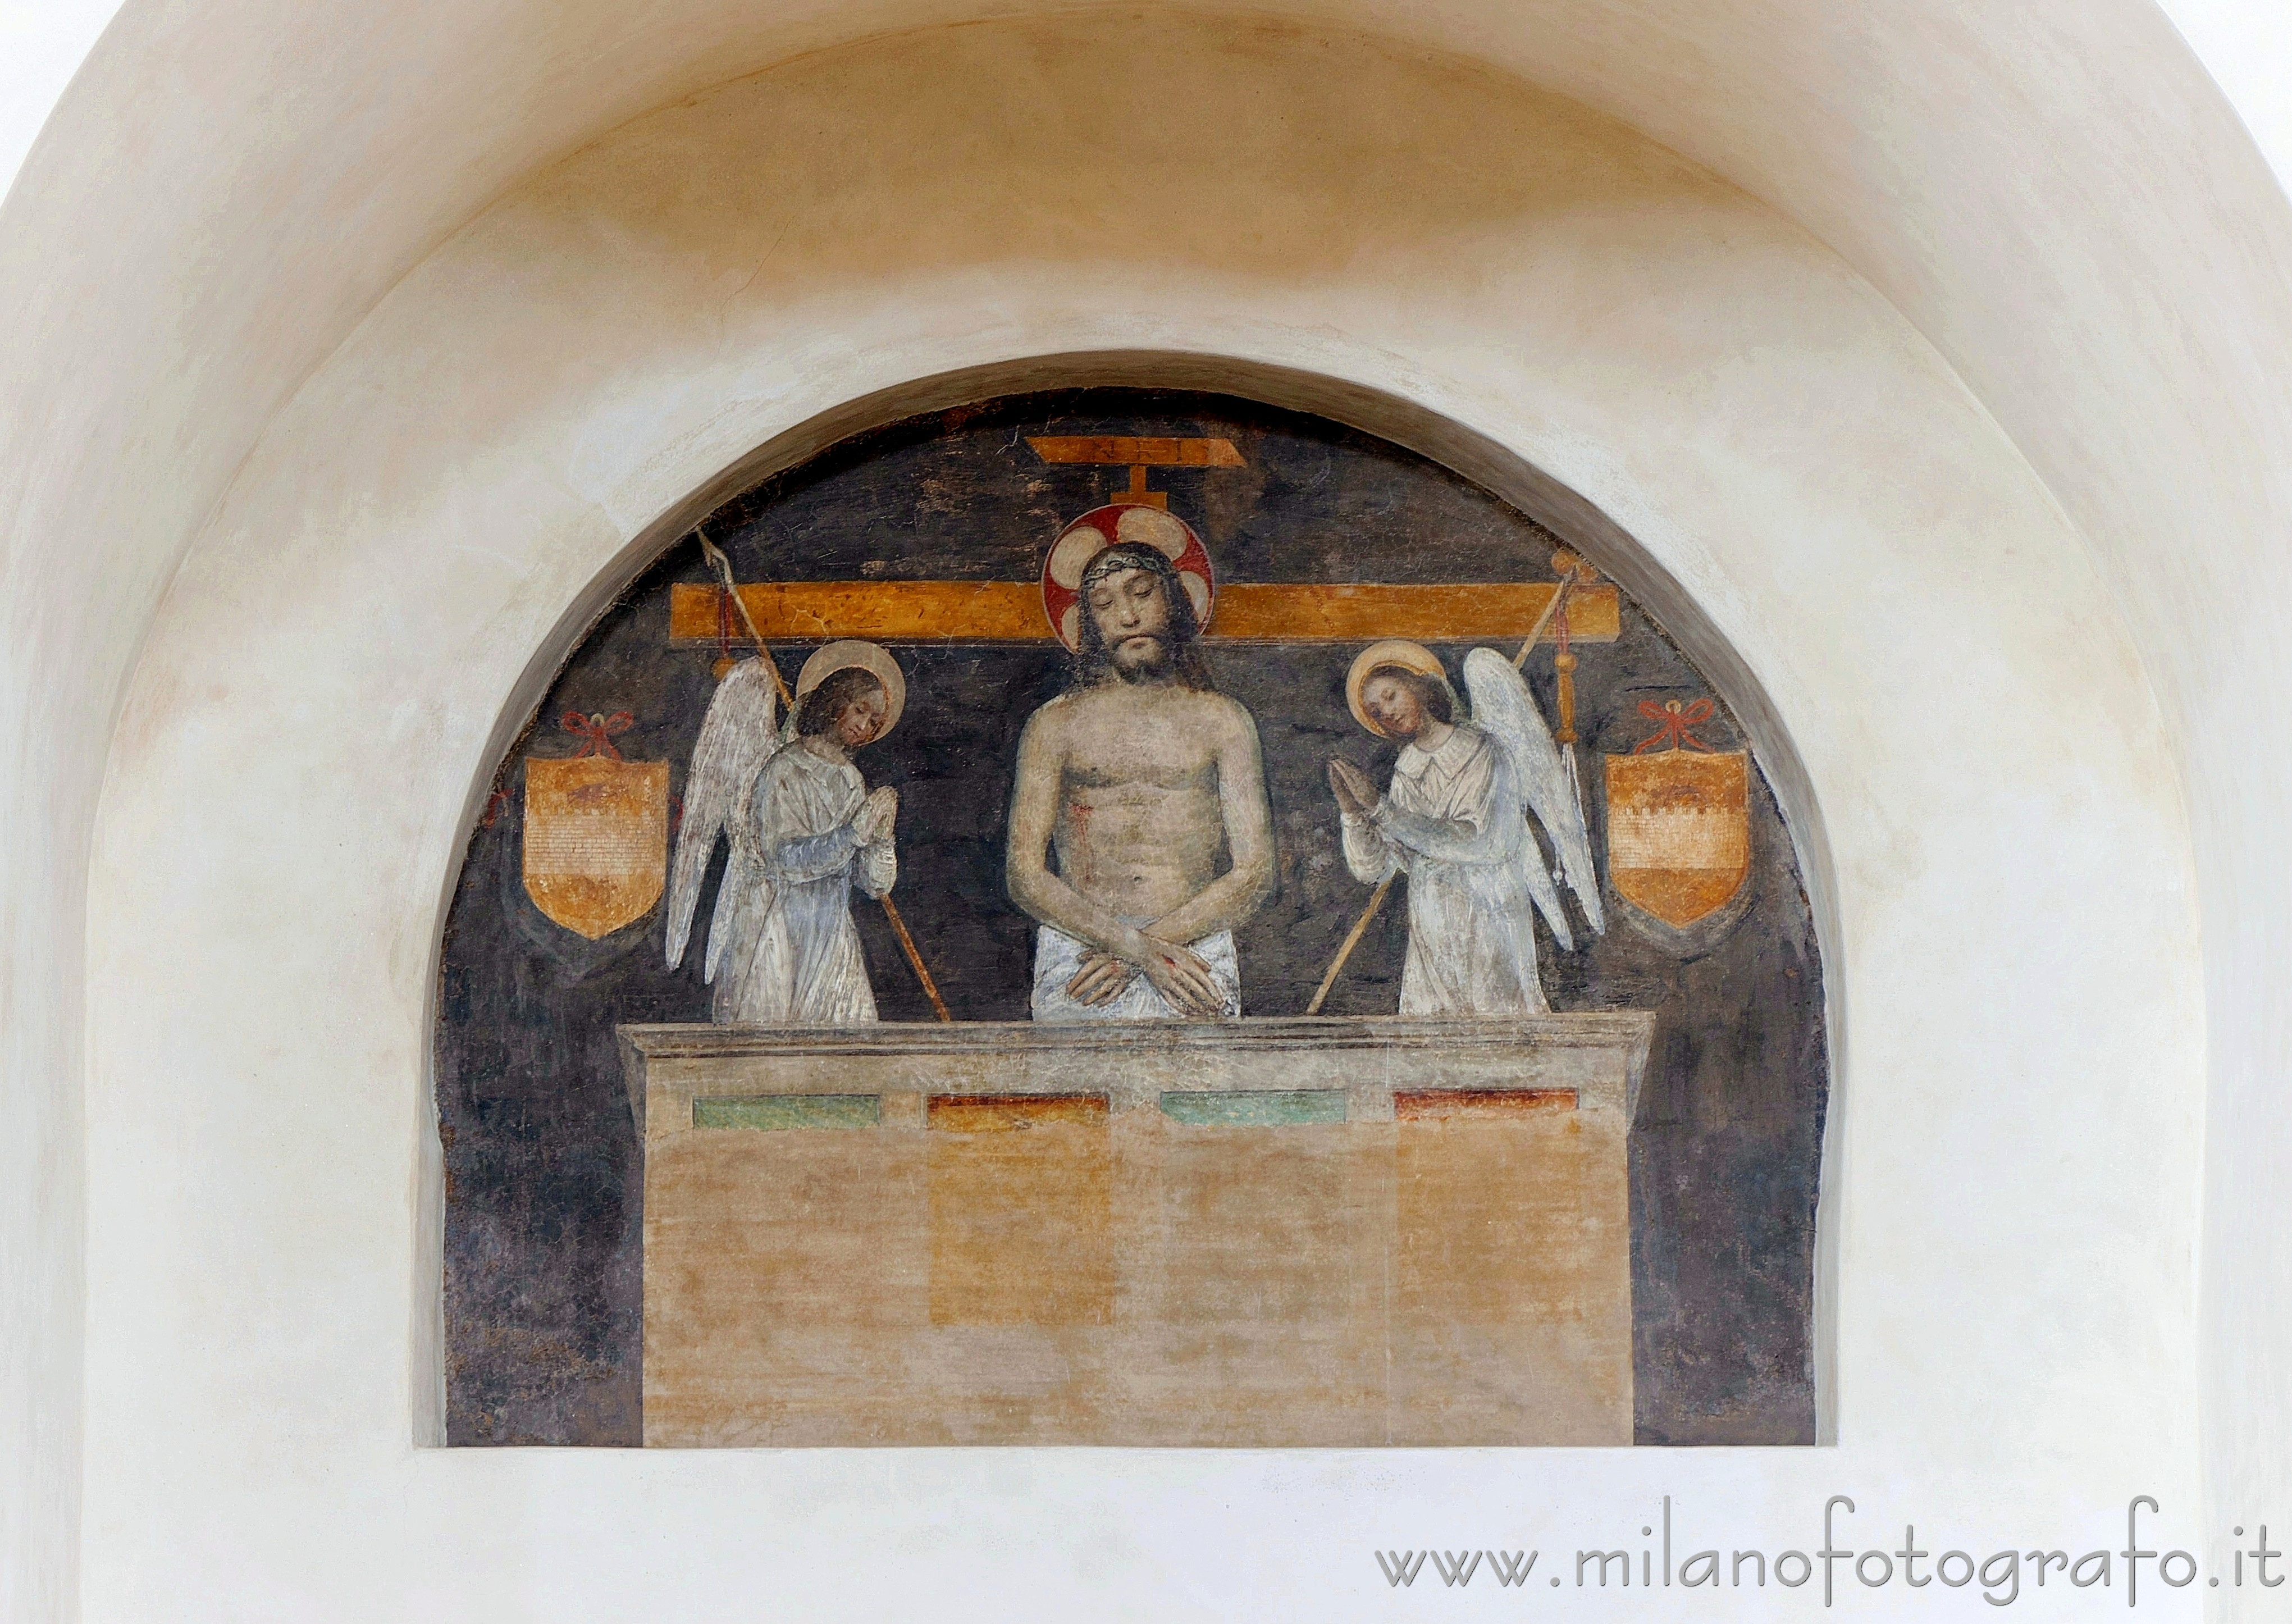 Milano: Affresco della Pietà nella Basilica di San Lorenzo Maggiore - Milano